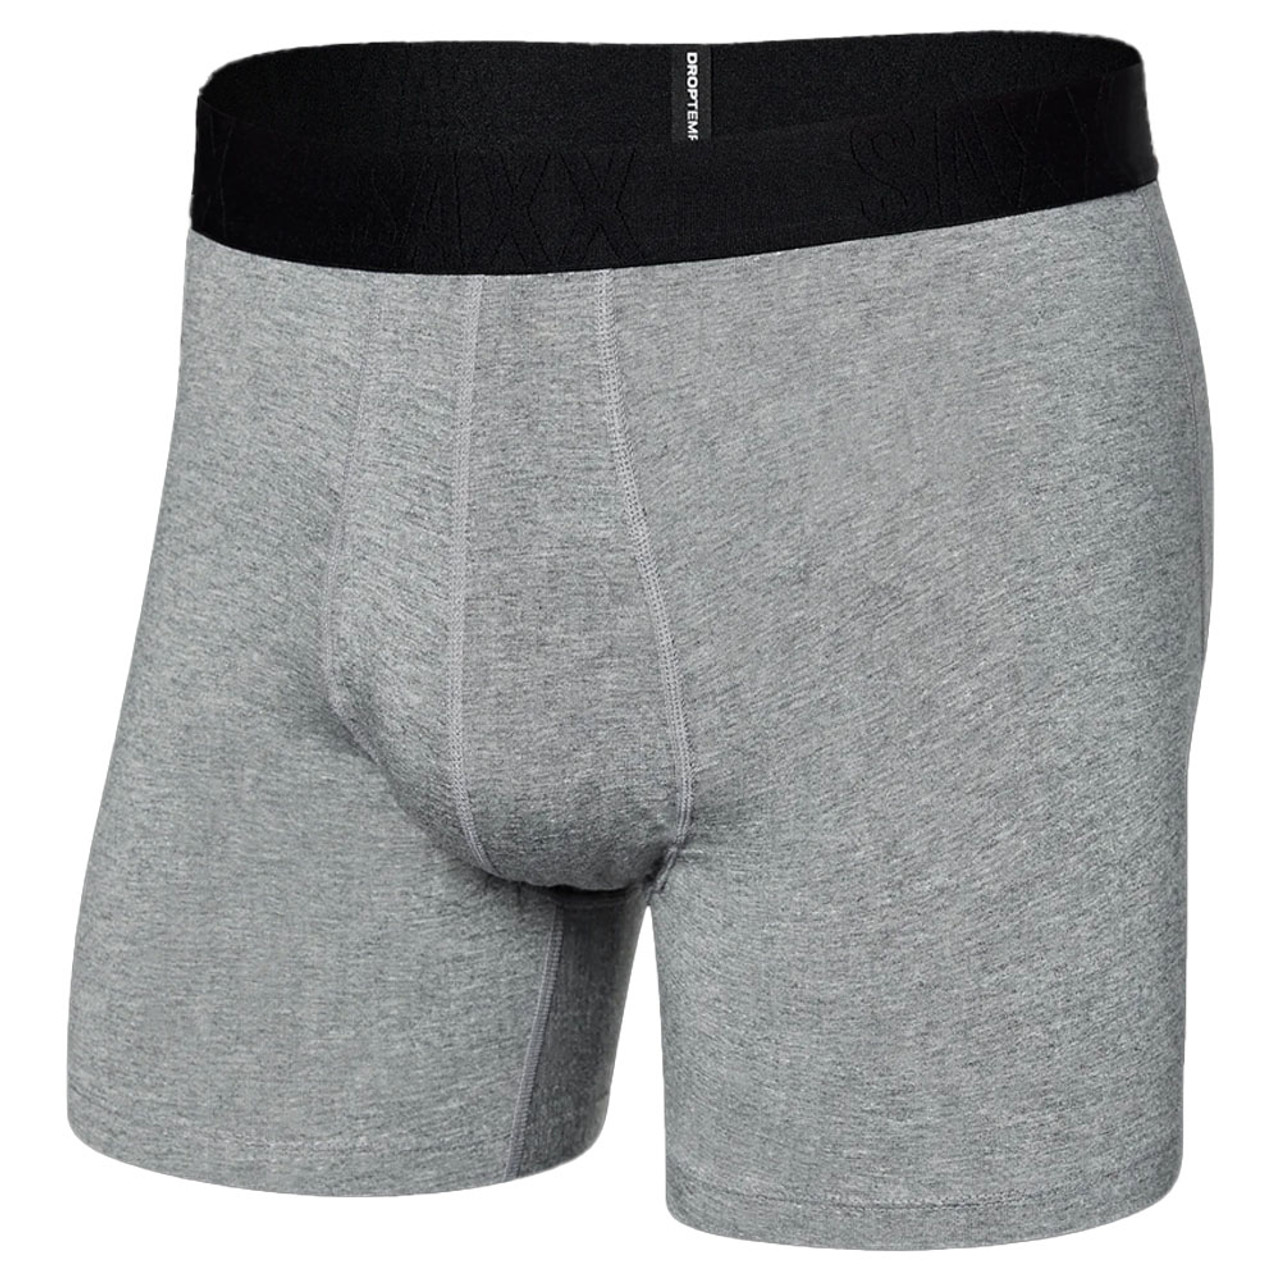 Saxx Underwear Droptemp Cooling Cotton Men's Briefs